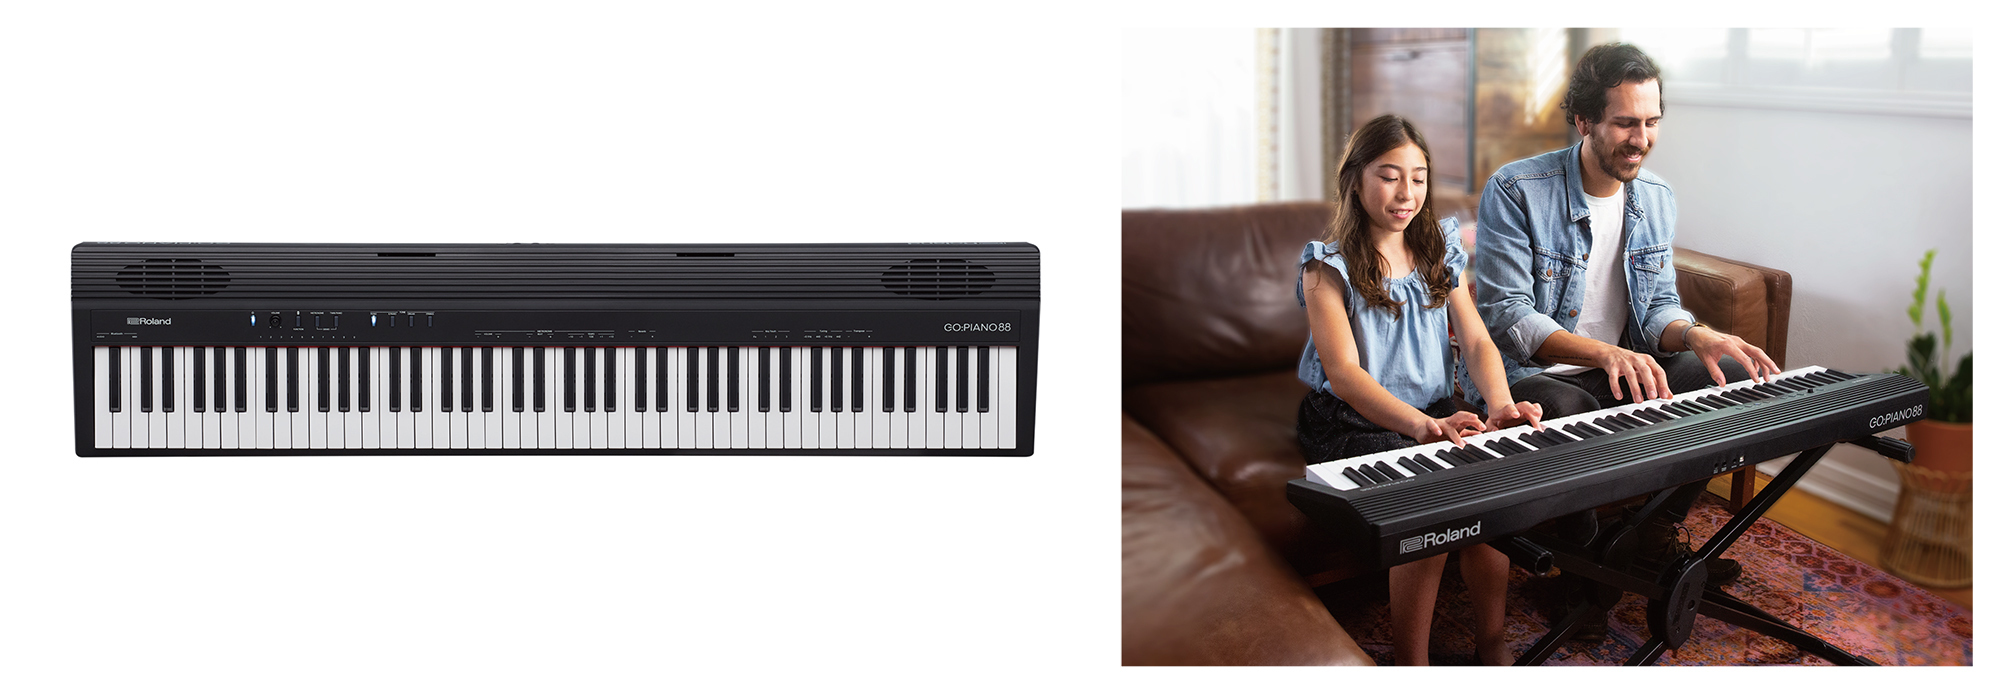 弾きやすいピアノ・タイプの88鍵盤を搭載した軽量キーボードが登場 ～どこにでも気軽に持ち運んで本格的なサウンドで演奏。アプリで楽譜の表示や練習も可能～｜ ローランド株式会社のプレスリリース